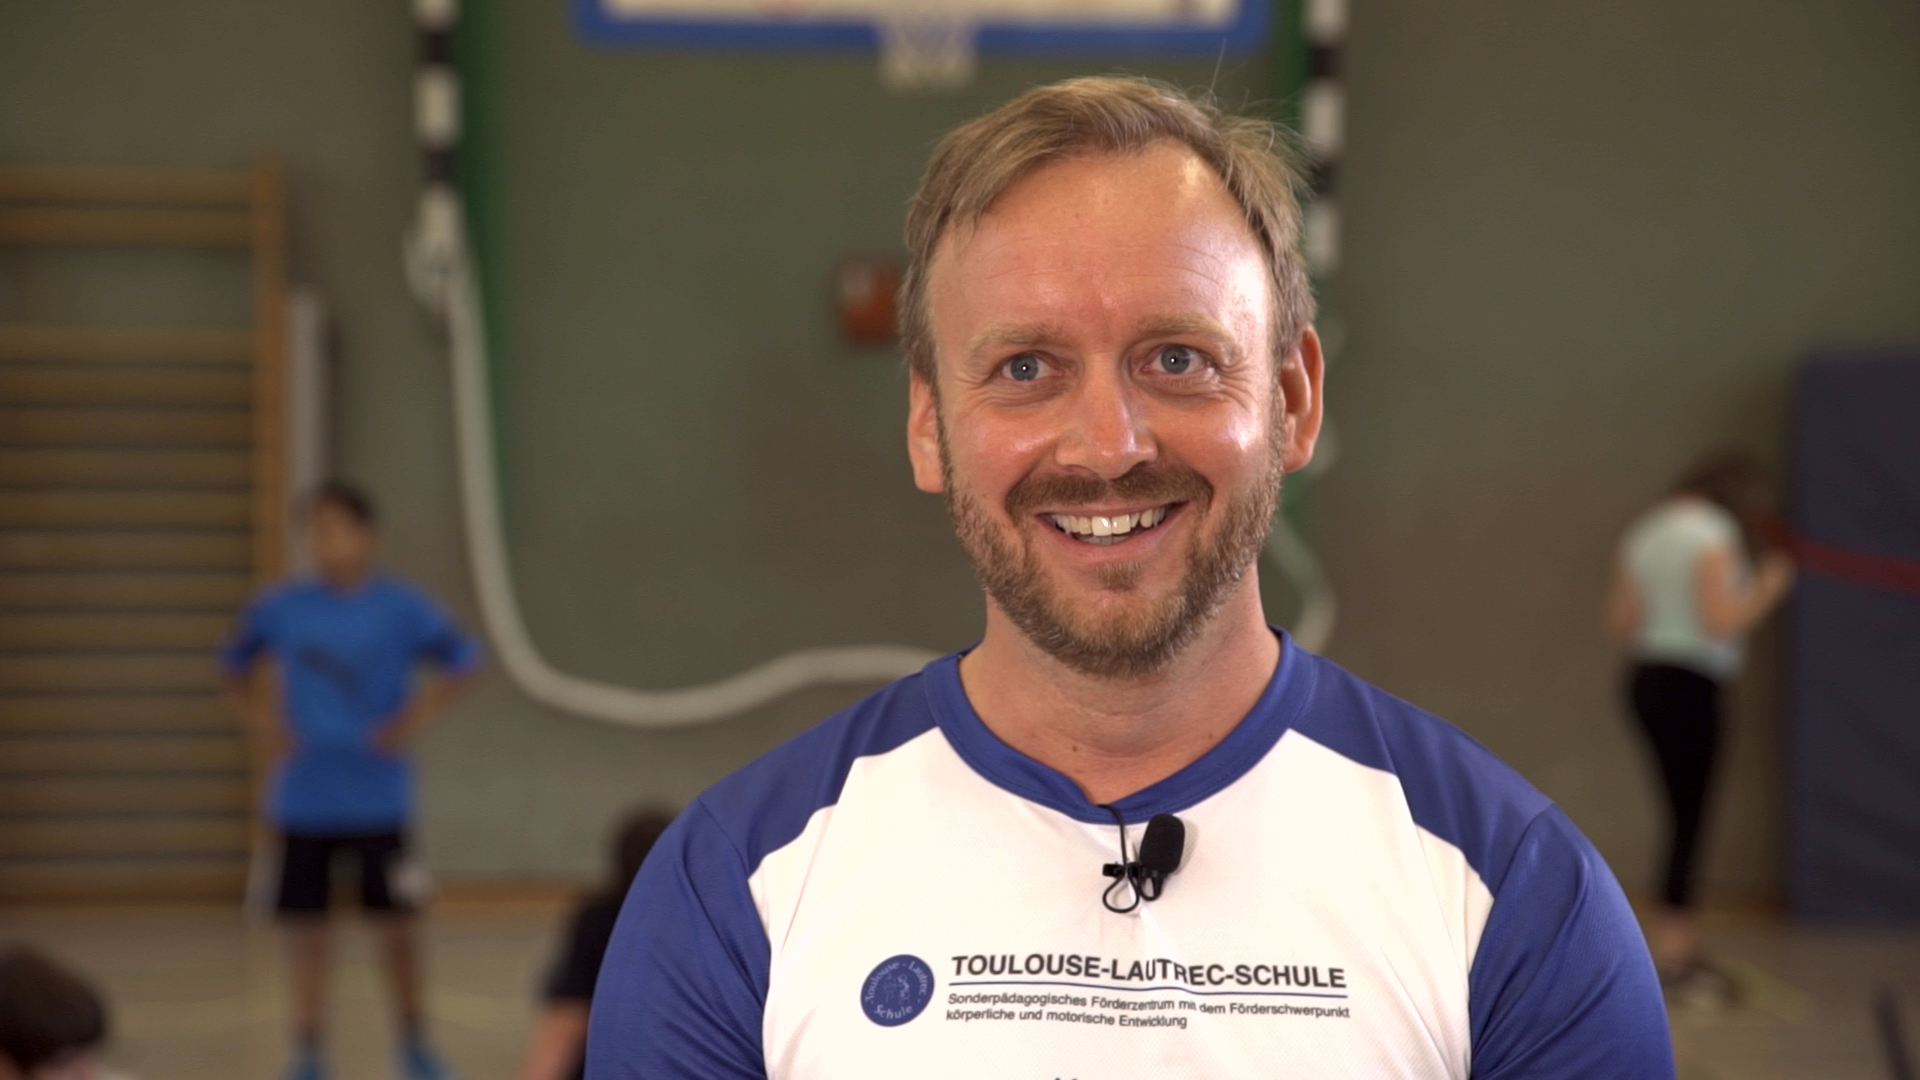 Henry John, Sportkoordinator der Förderzentren für körperliche und motorische Entwicklung in Berlin